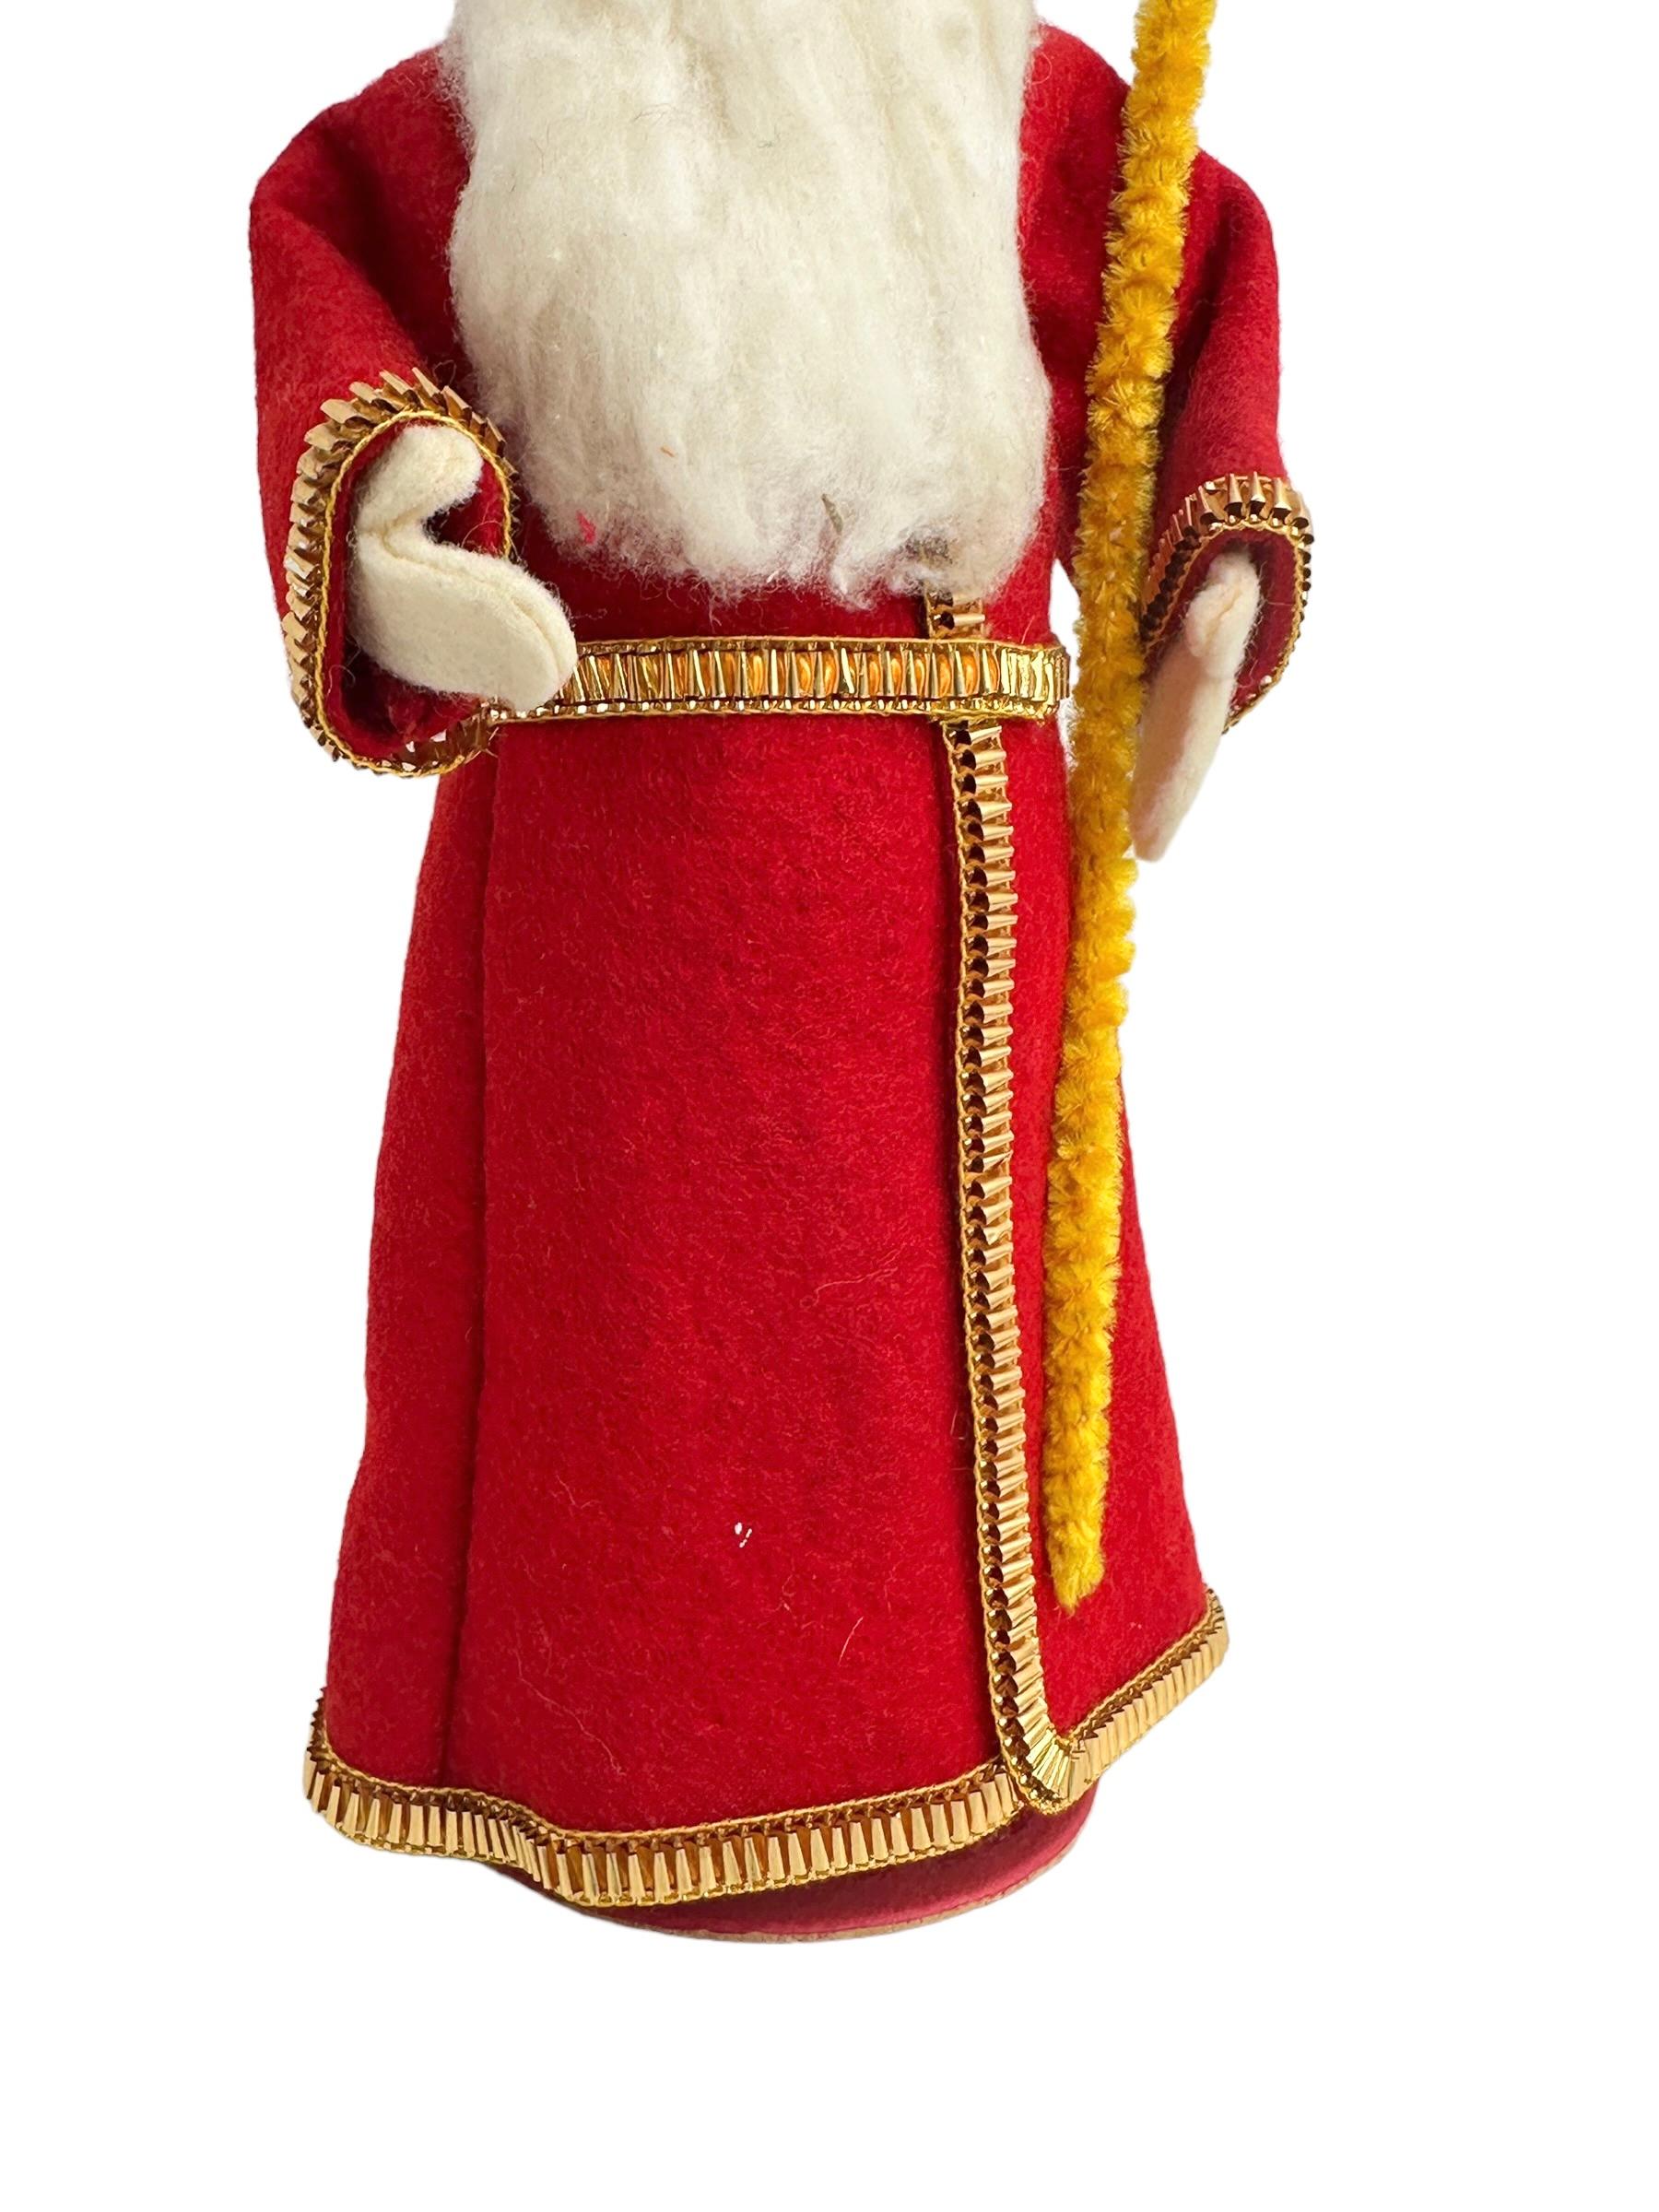 Atemberaubende Weihnachts-Vintage-Gürsnickelfigur des heiligen Nikolaus Santa Claus (Deutsch)